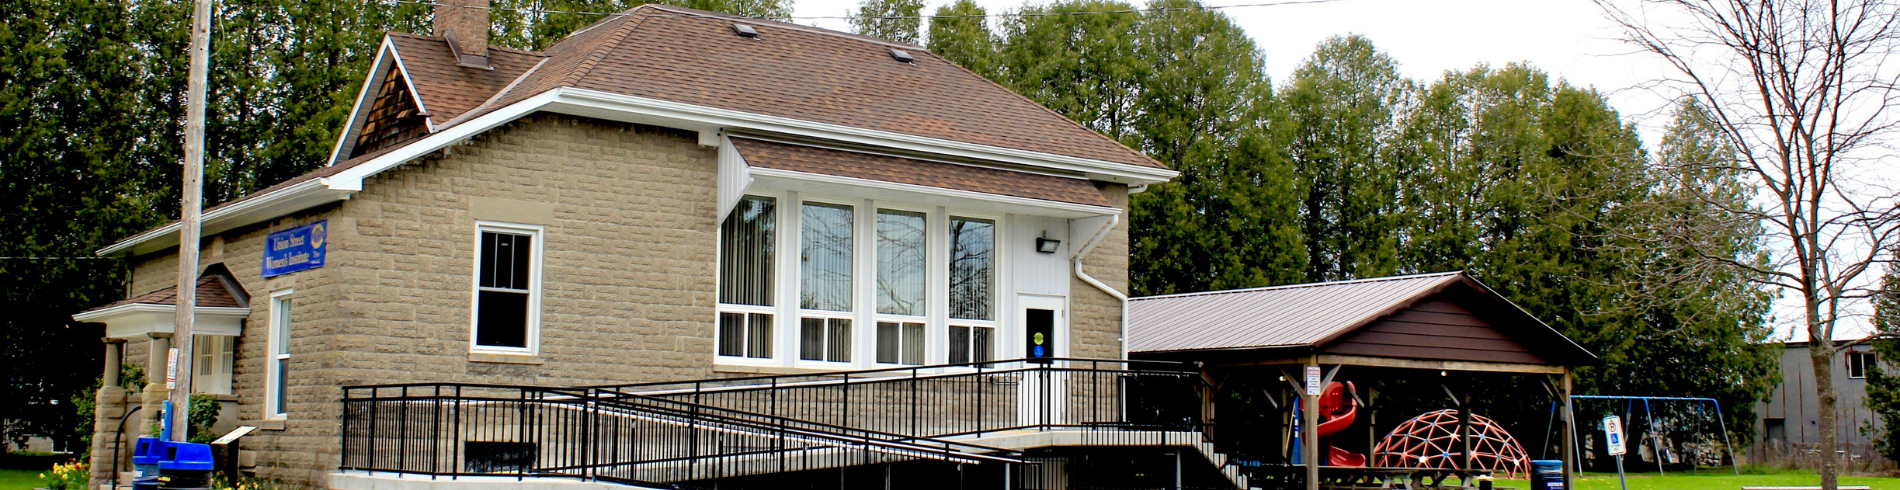 North Union Community Centre